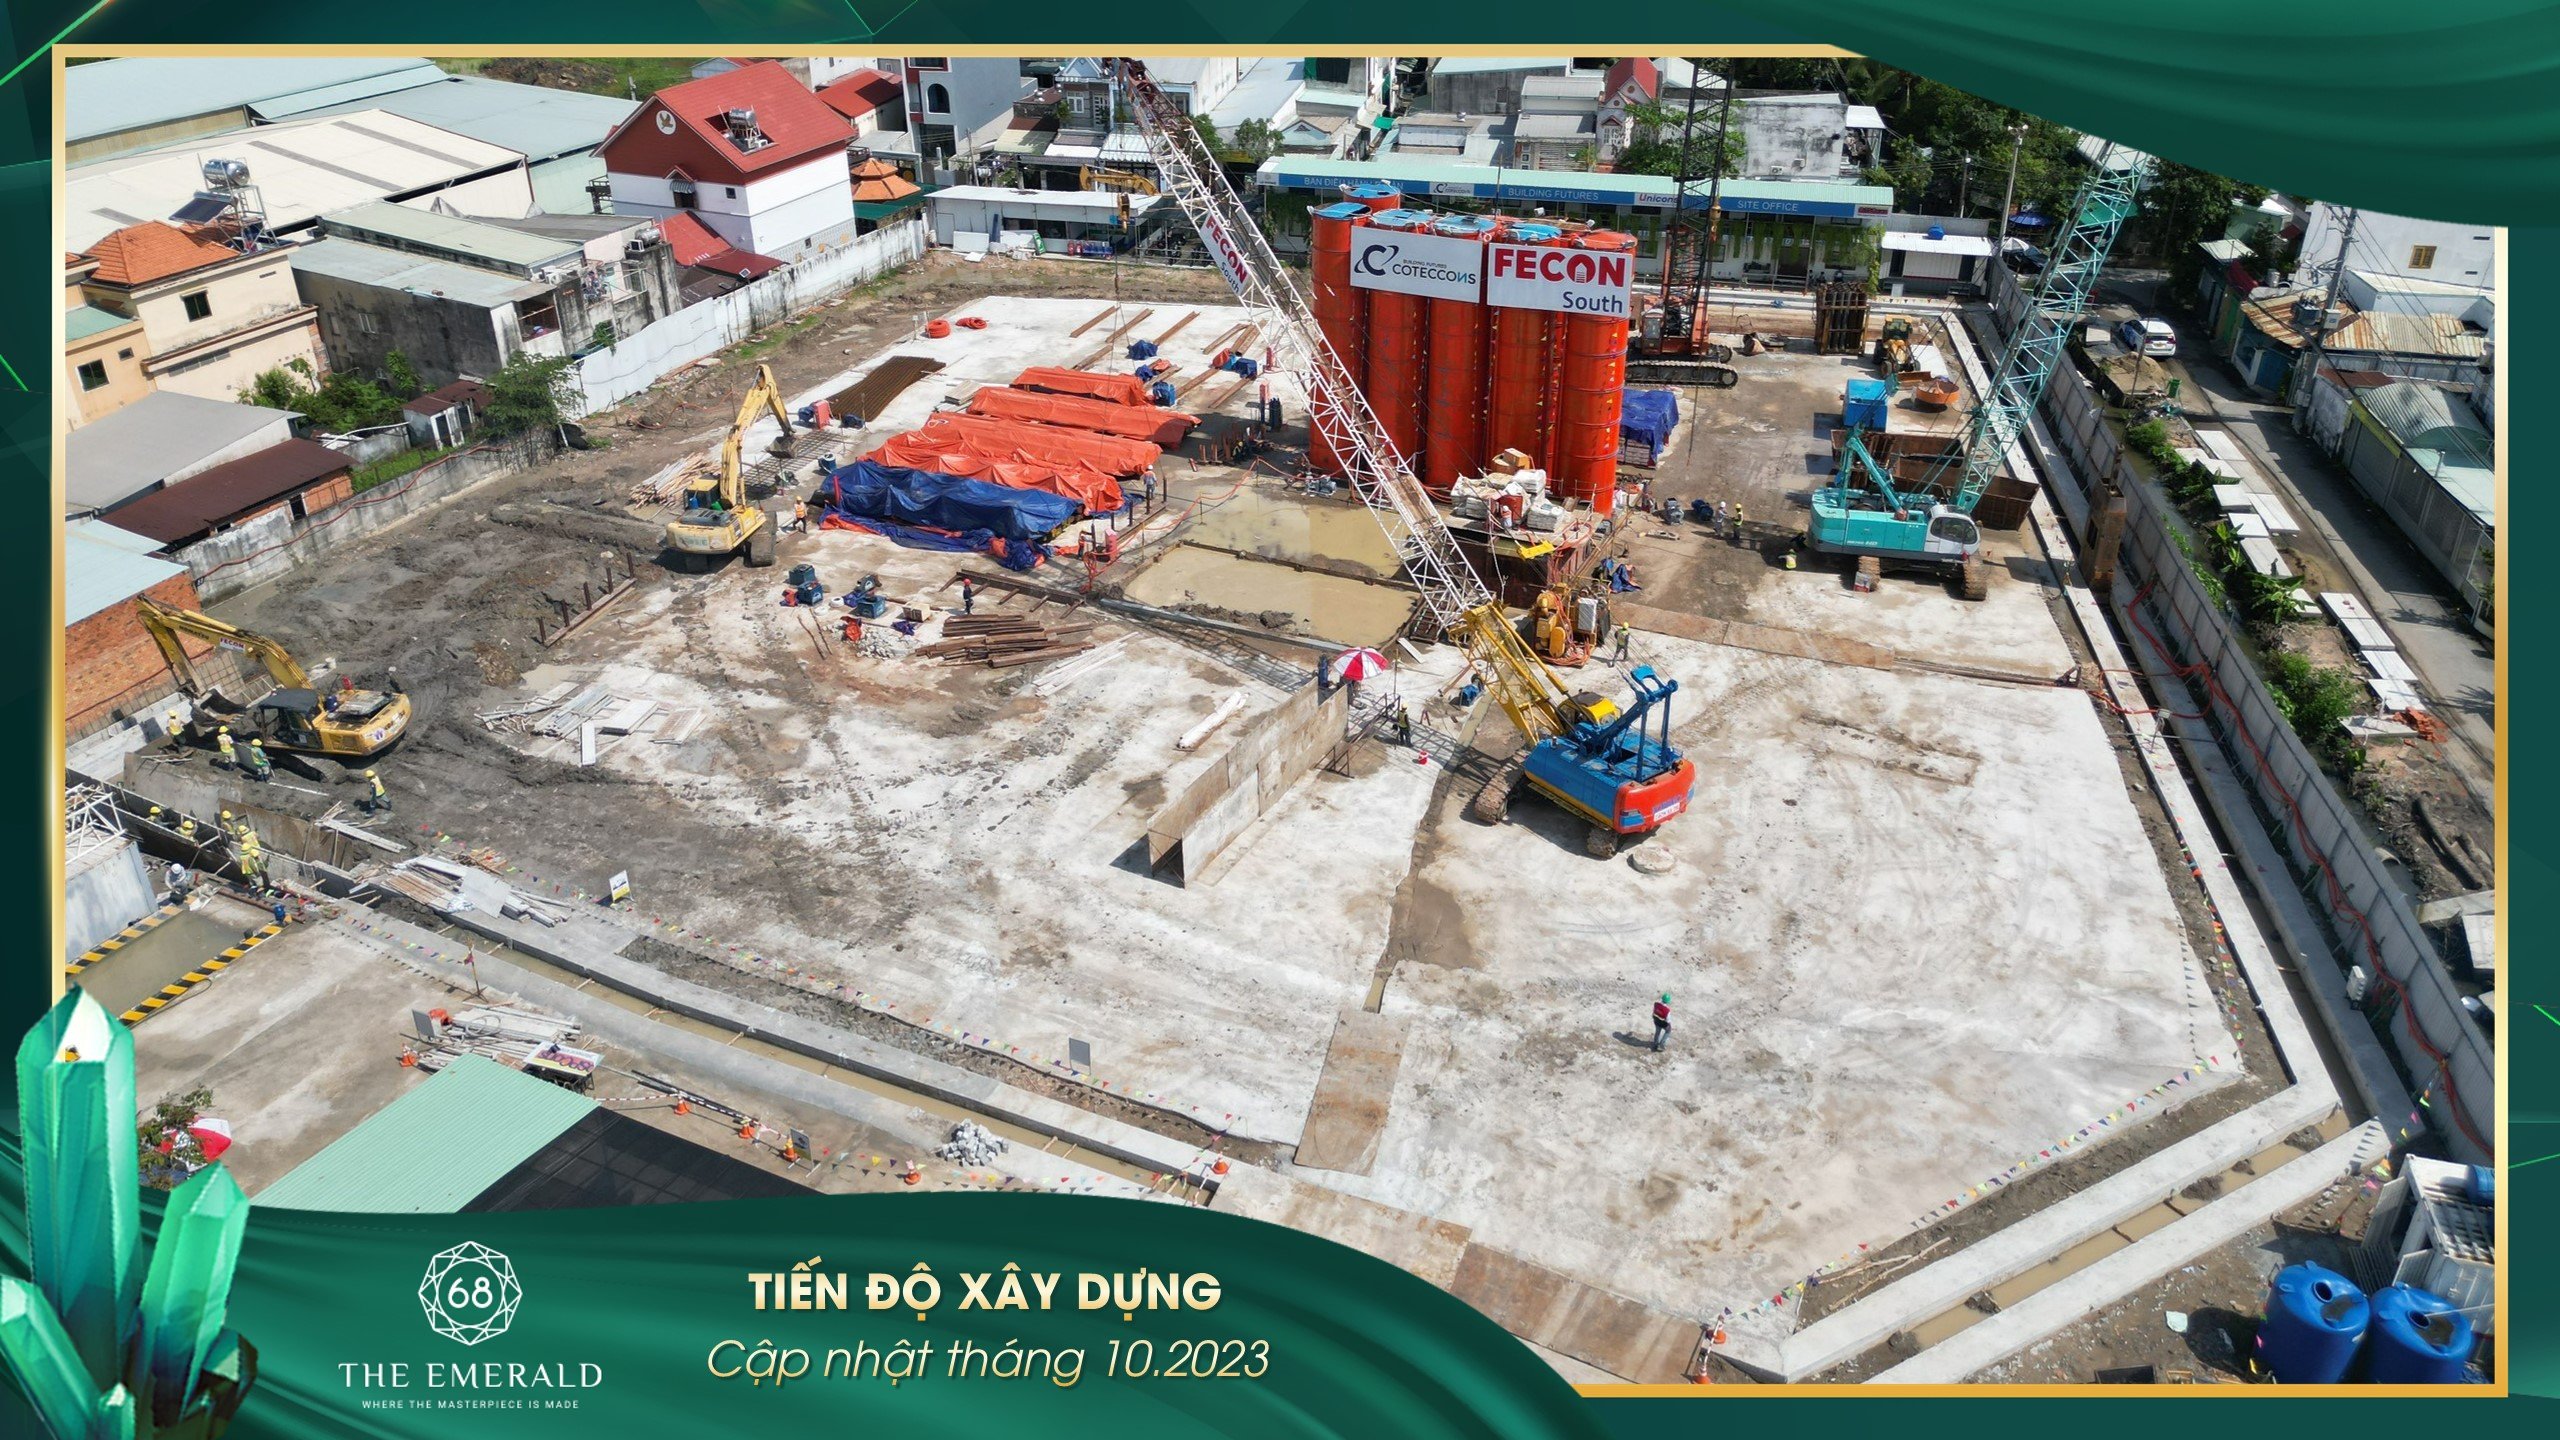 Tiến độ xây dựng dự án căn hộ The Emerald 68 Thuận An, Bình Dương